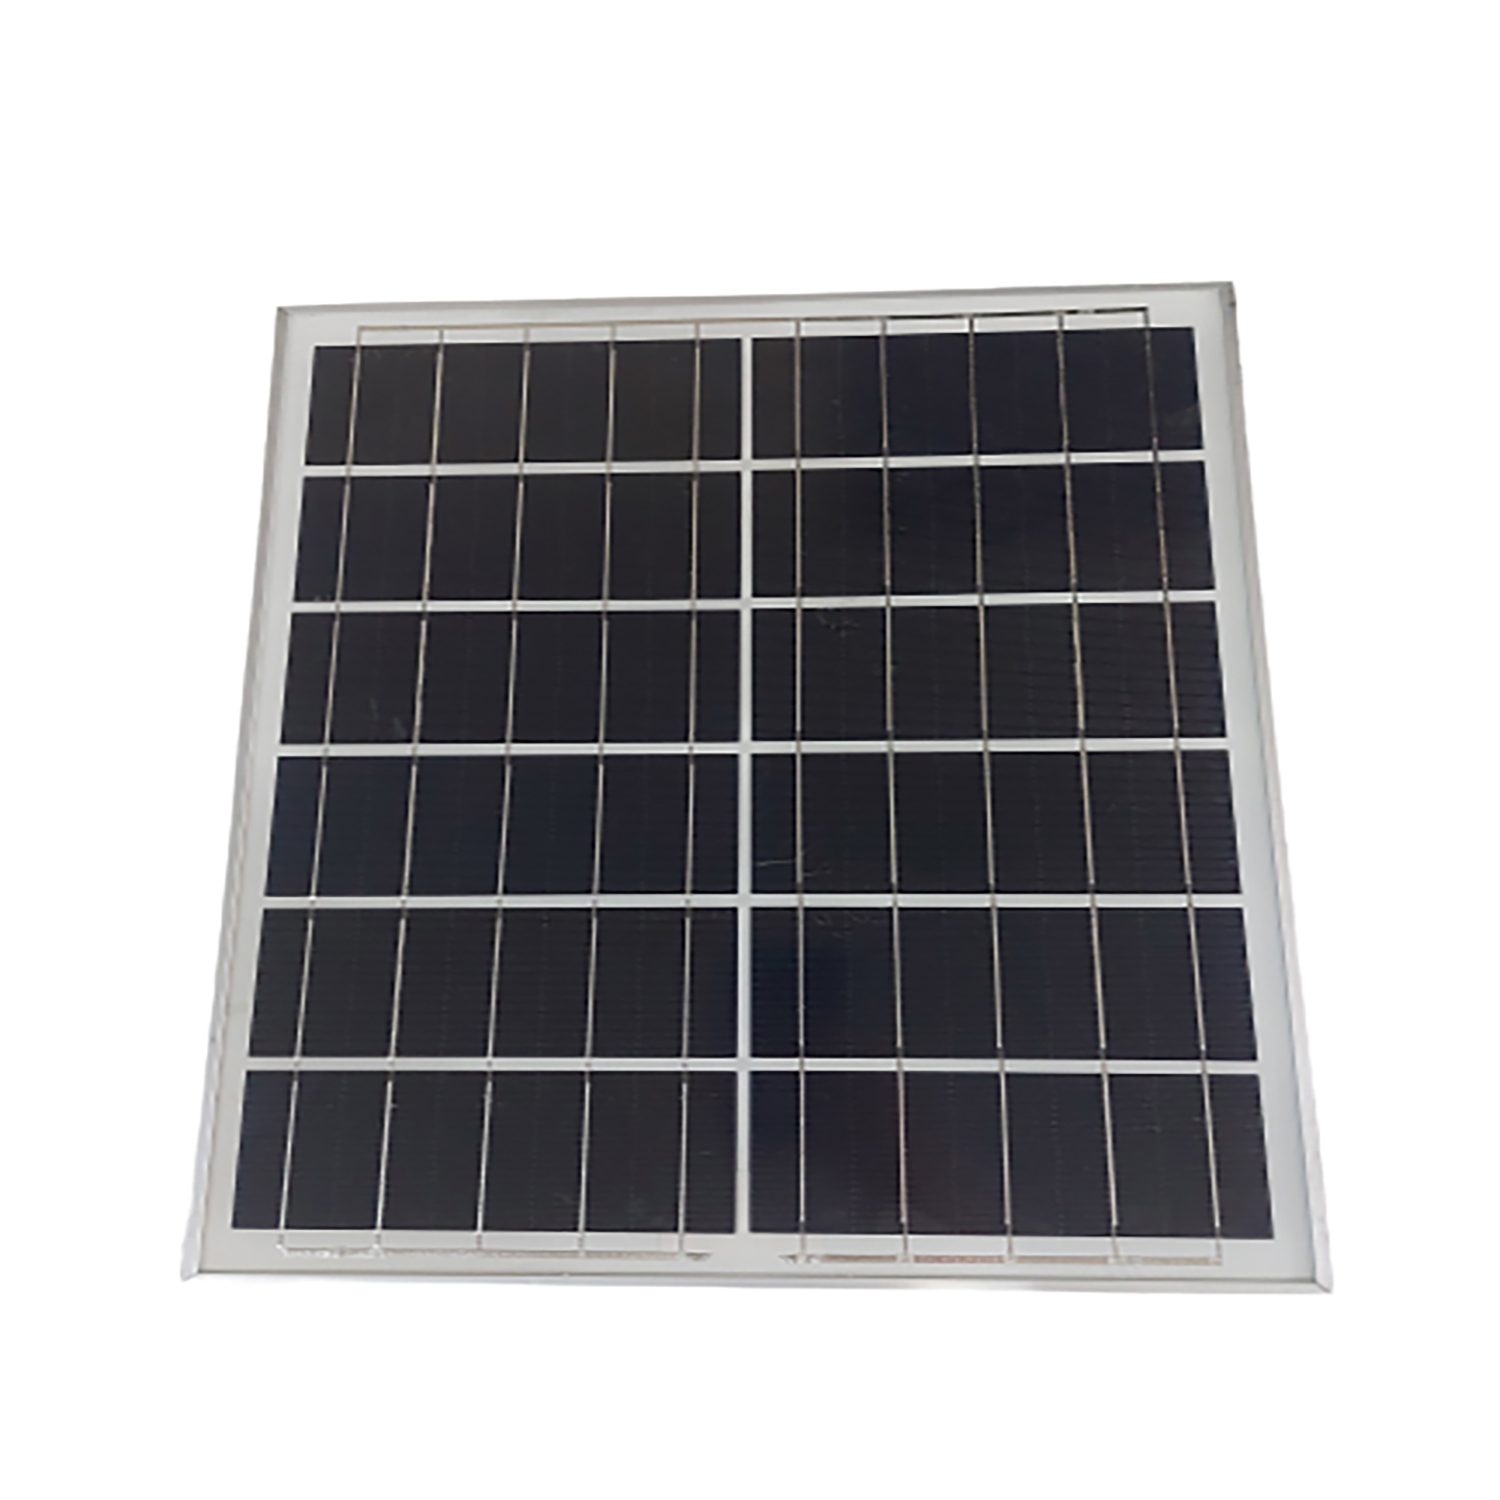 پنل خورشیدی پروژکتوری مدل Yingli ظرفیت 20 وات